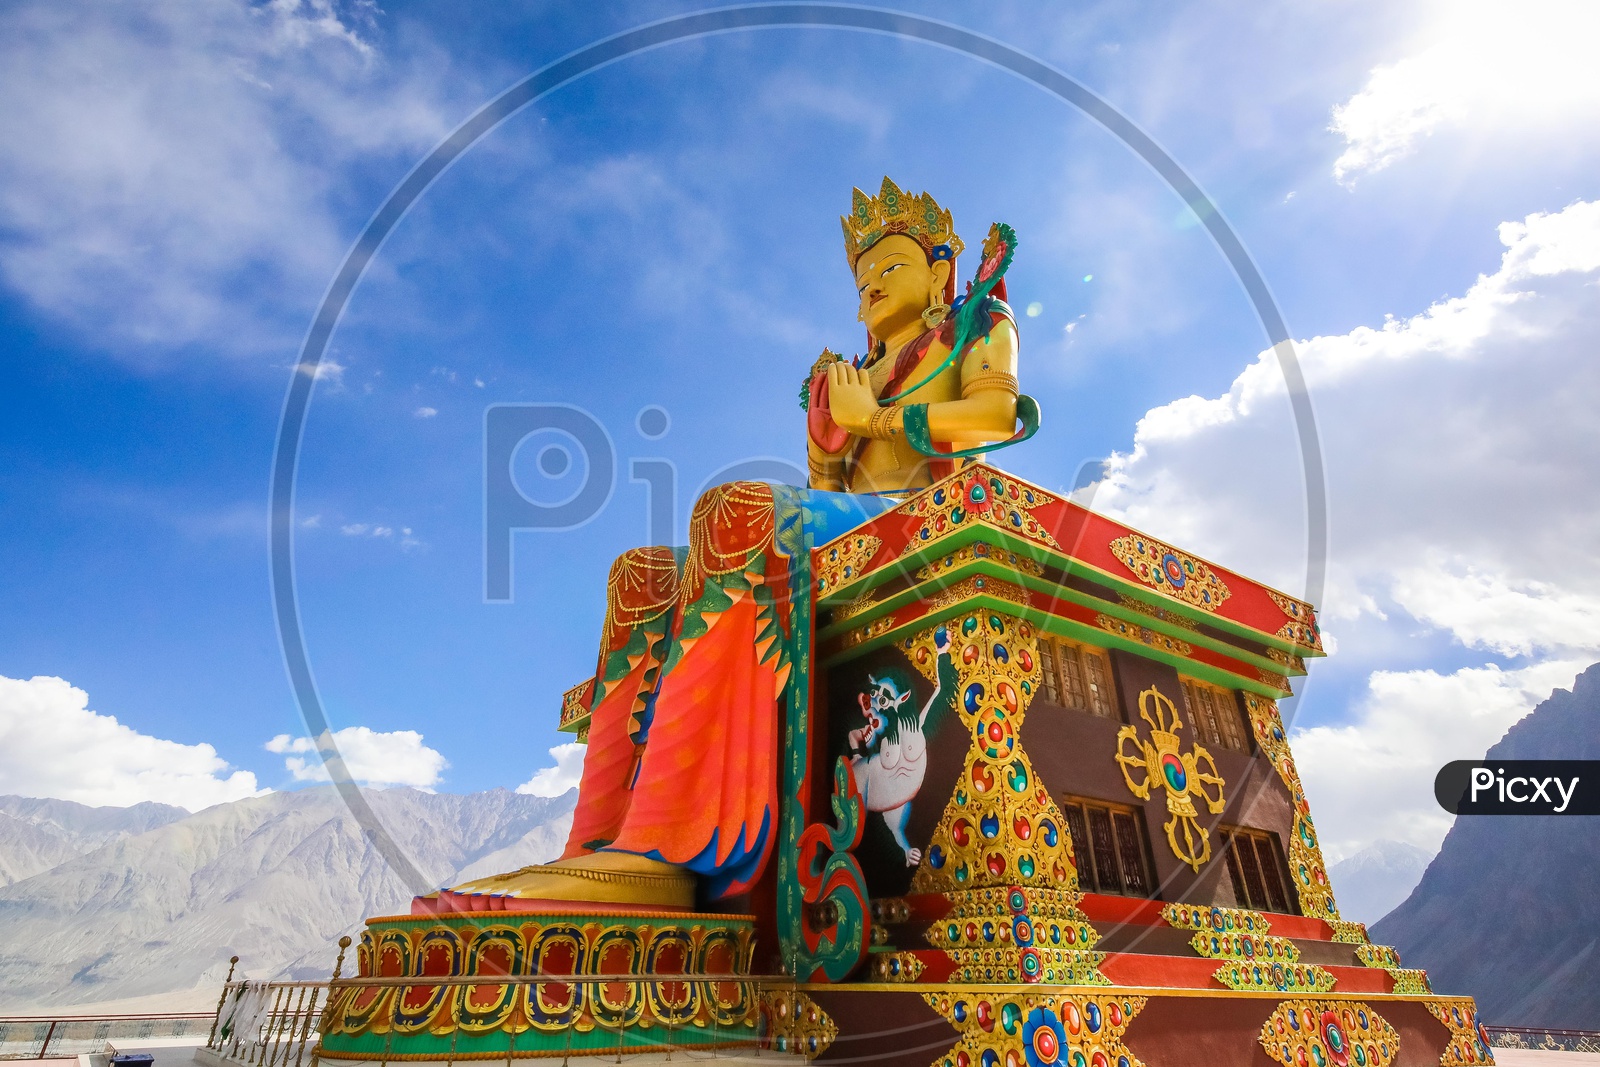 The Giant Maitreya Buddha Statue in Nubra Valley